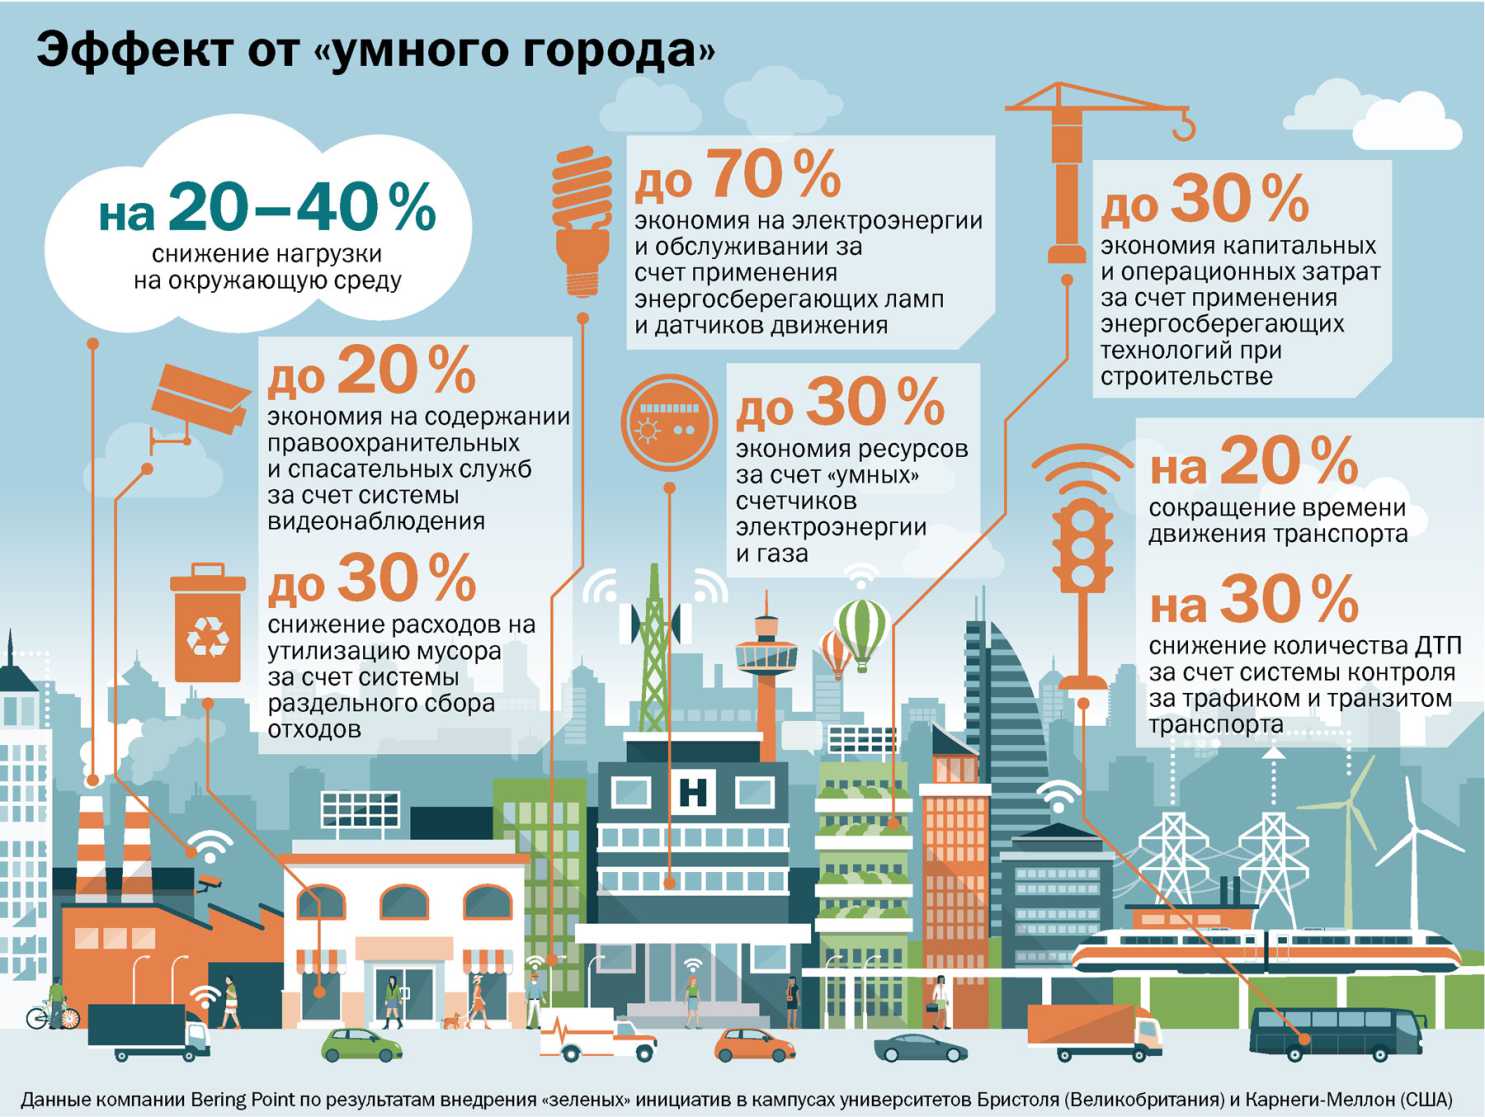 Инвестиции в проект "Умный город" составят 360 млрд рублей